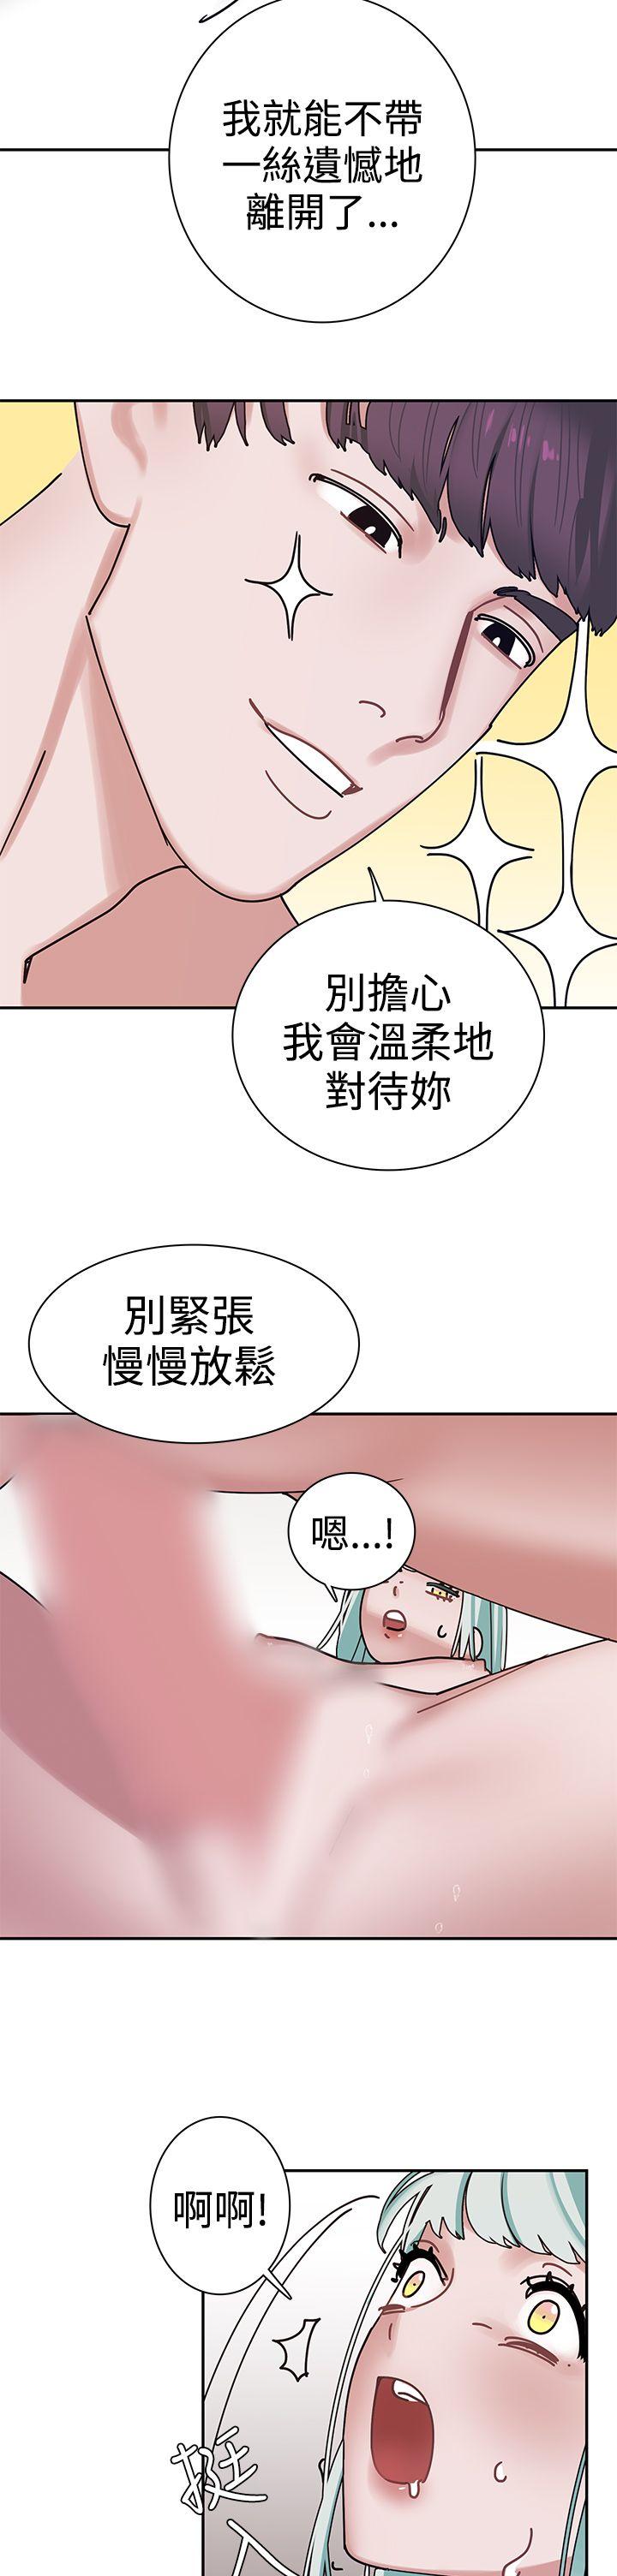 韩国污漫画 辣魅當傢 第4话 18